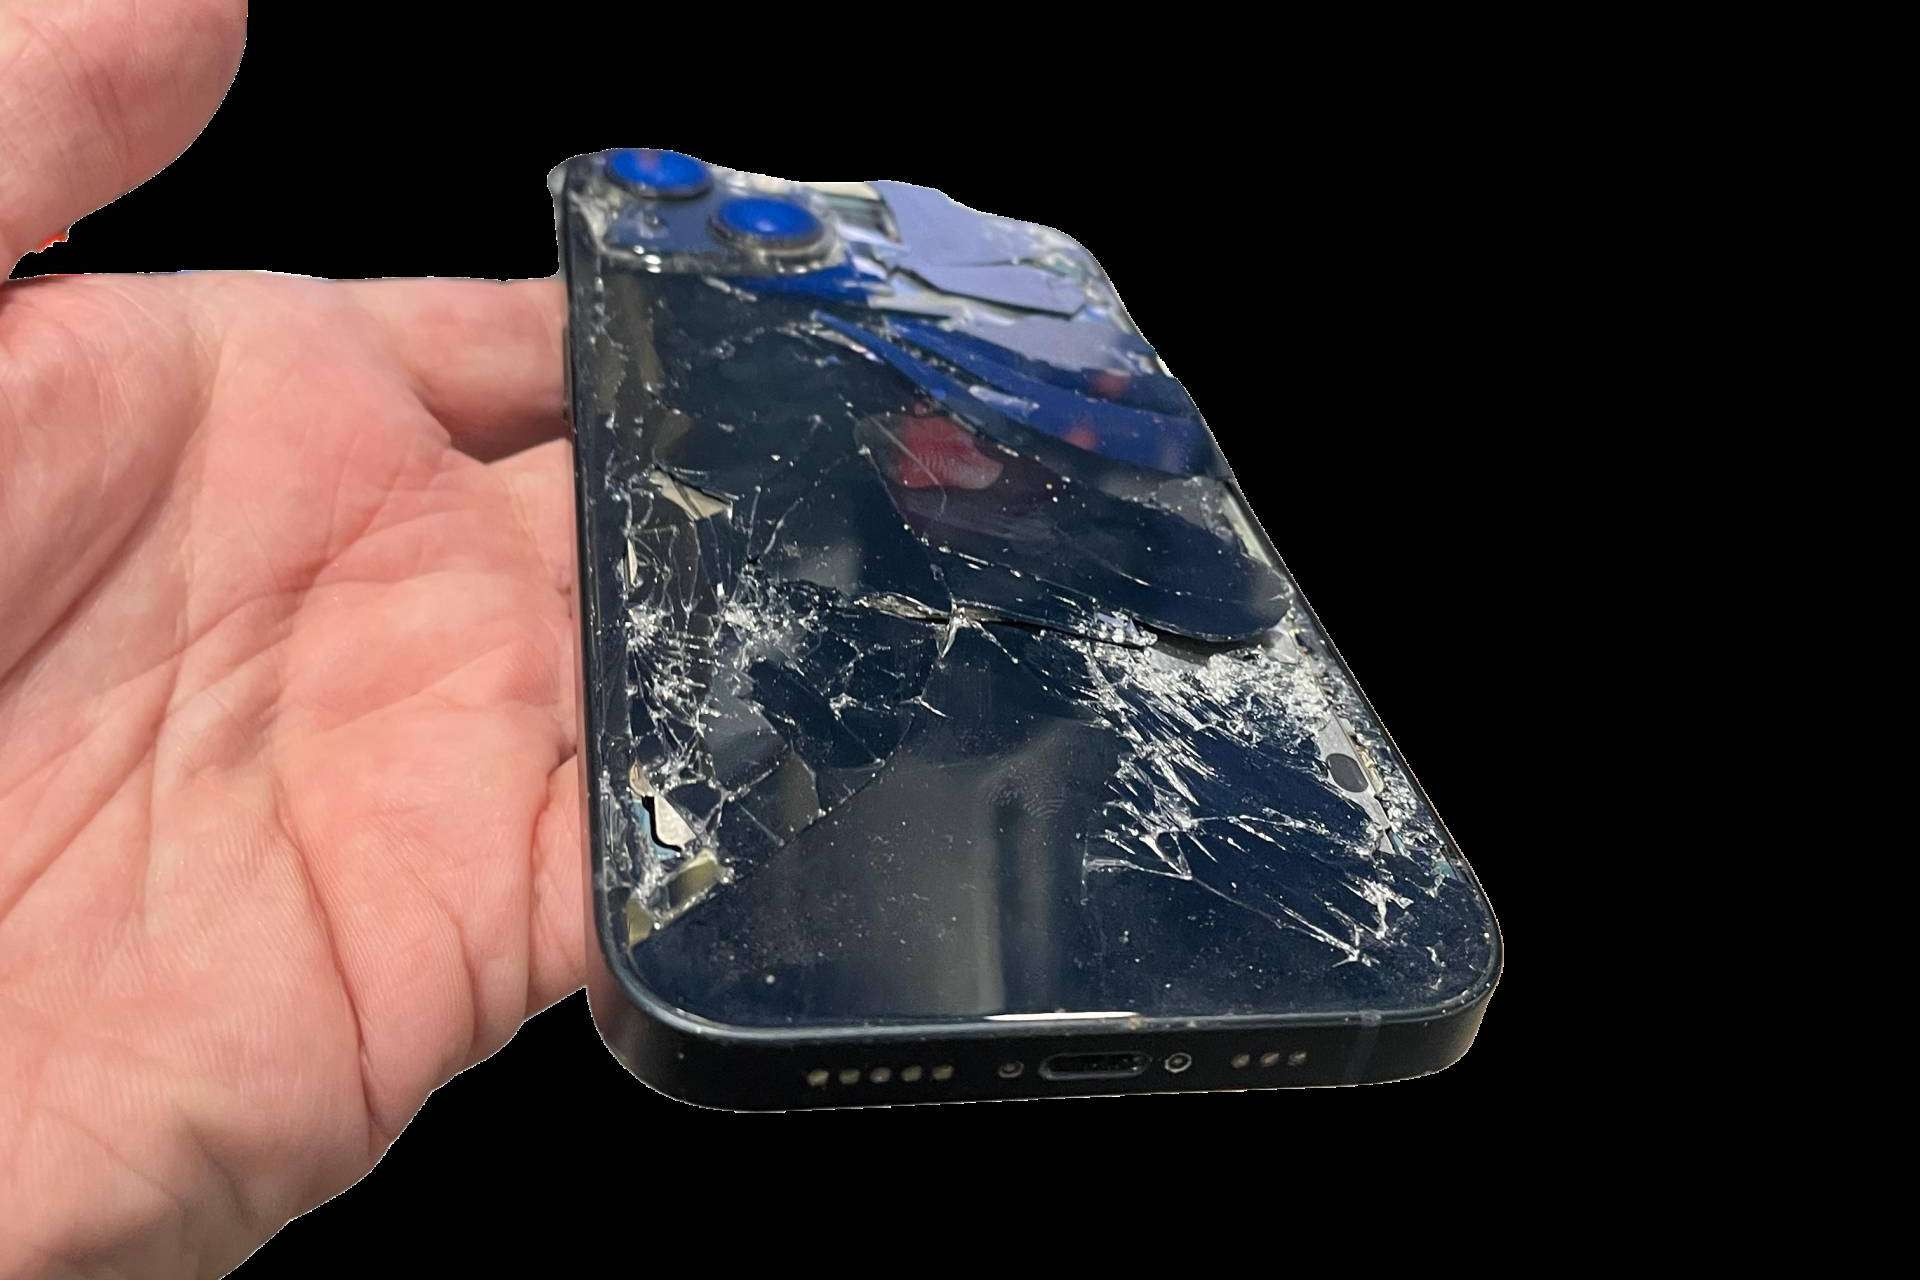  Reparación iPhone de la mano de Reparar Ordenadores, una vía sostenible y económica 